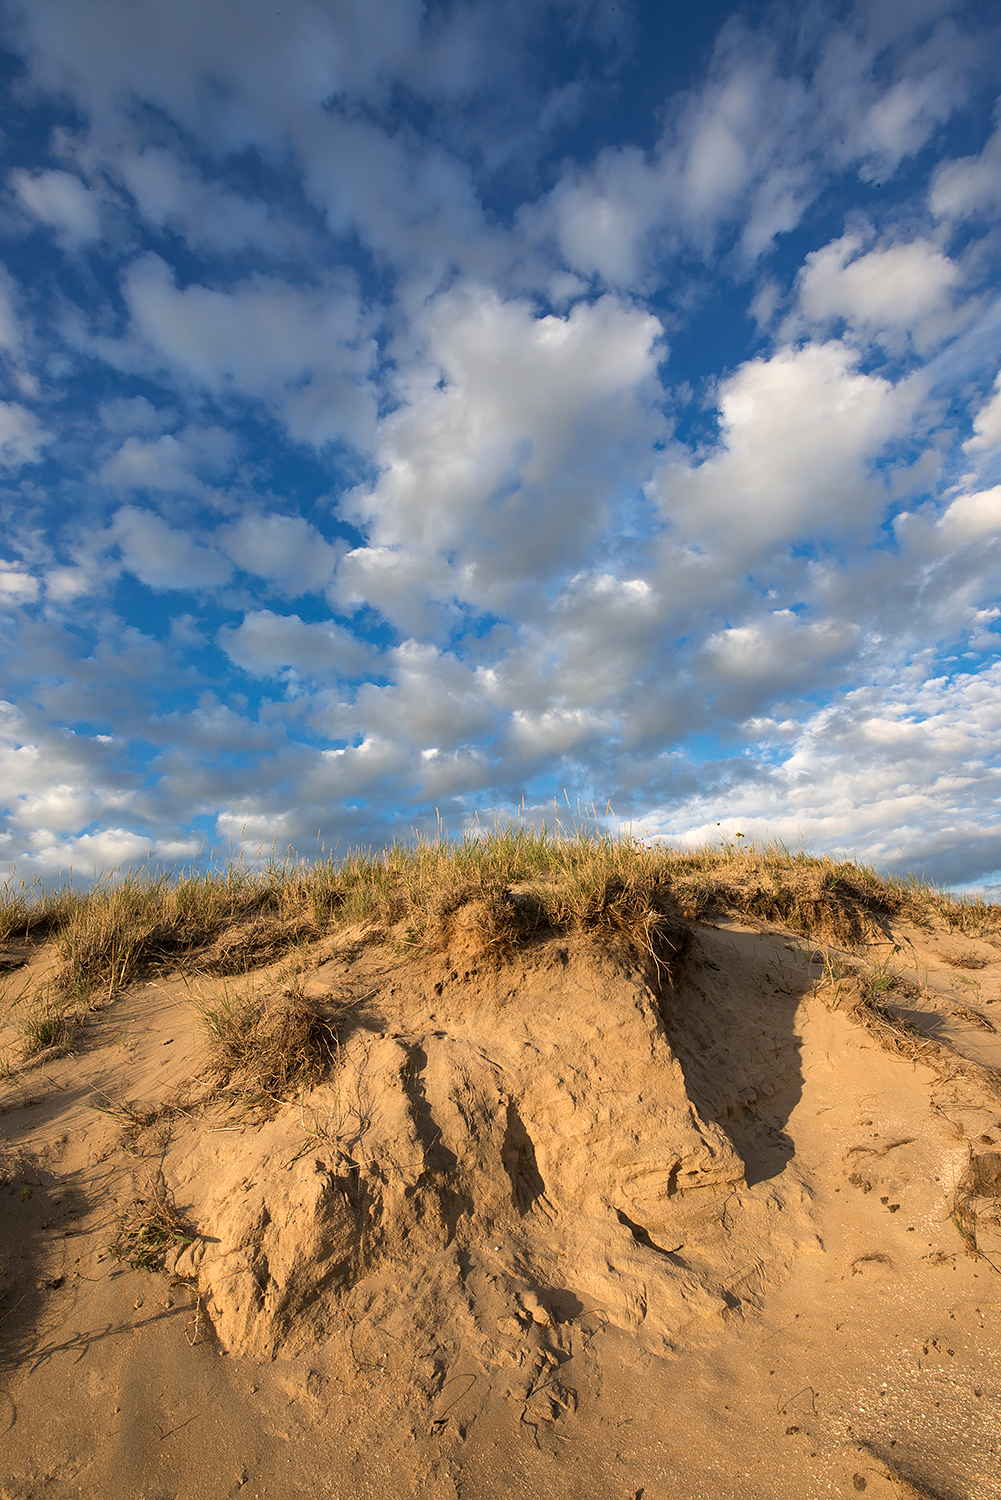 Schapenwolken boven zanderige duinhelling van stuifkuil in de duinen van het Noordhollands Duinreservaat bij Wijk aan Zee.